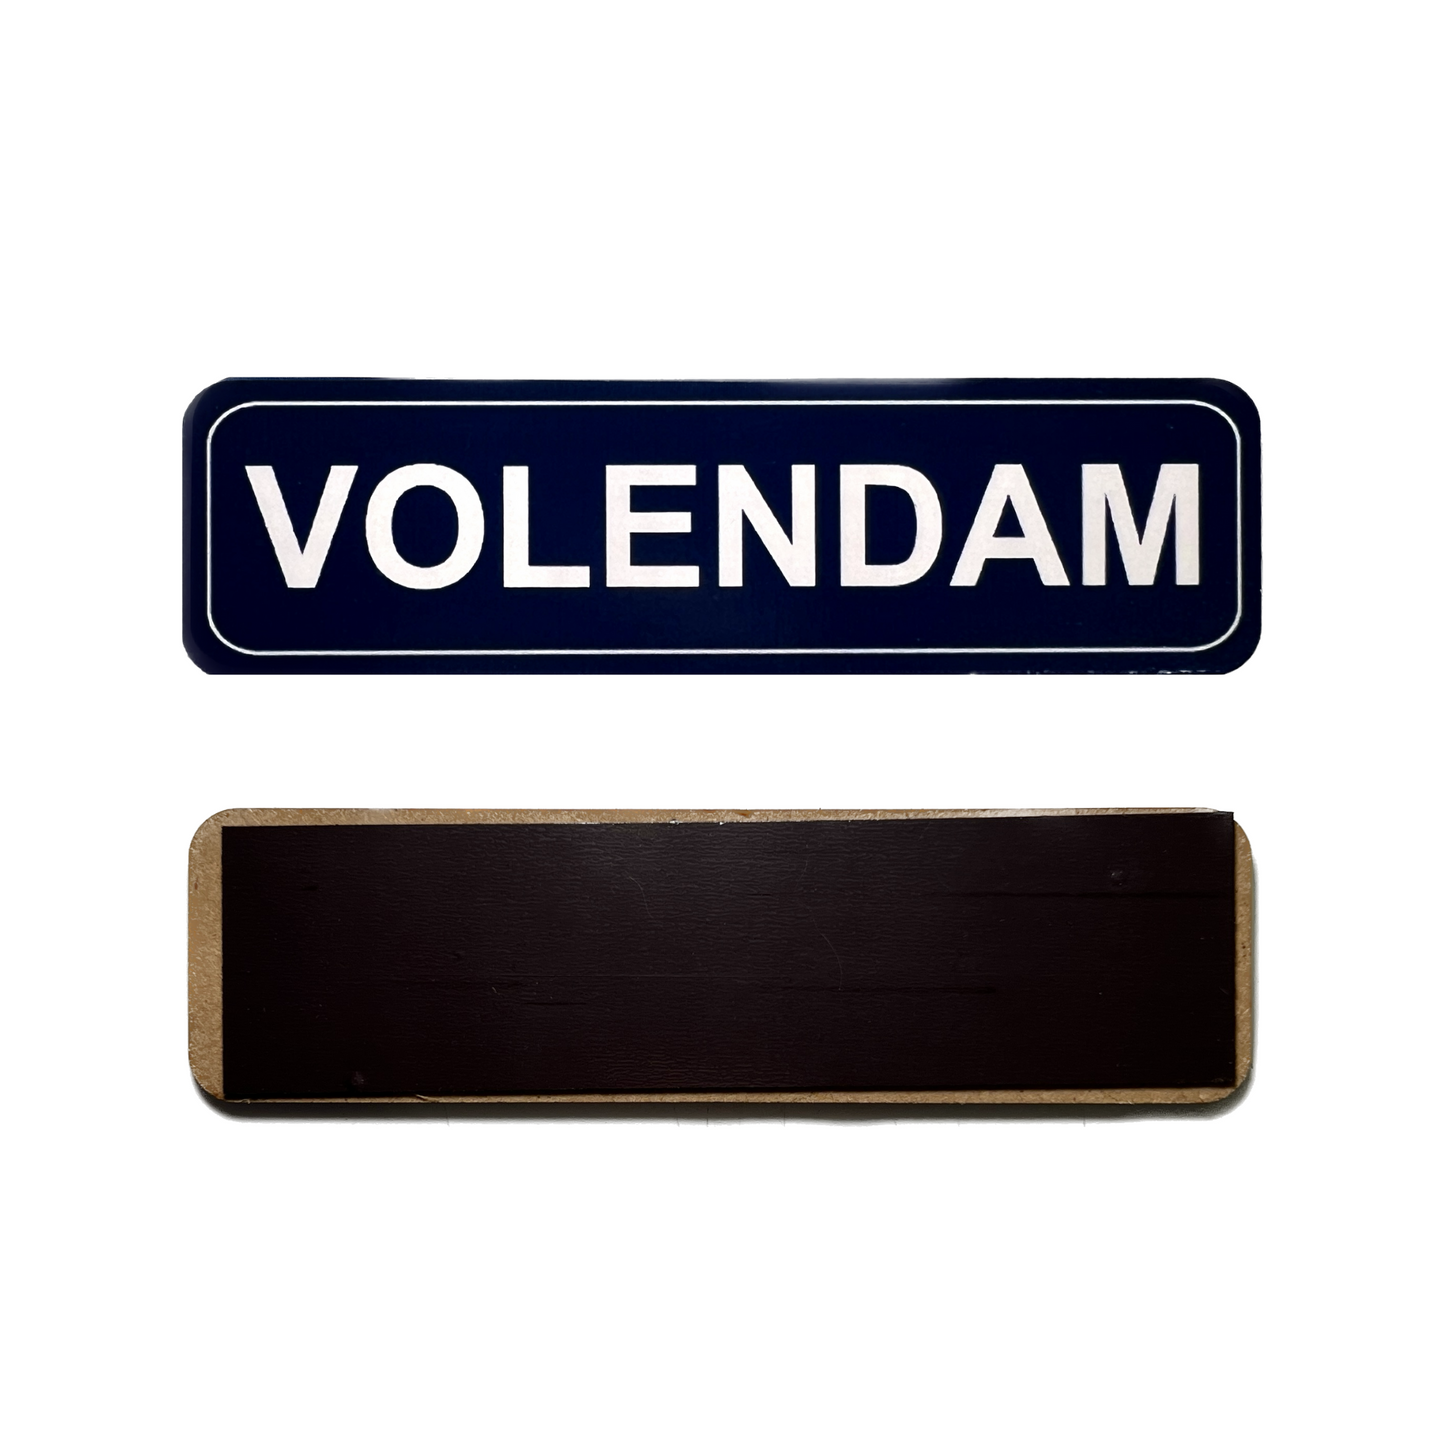 Deze coole Volendam Naambordje koelkastmagneet is ideaal als uniek cadeau of om te gebruiken als een praktische herinnering aan je vakantie in Holland! Het naambordje is gemaakt van stevig karton en heeft een magnetische achterkant.